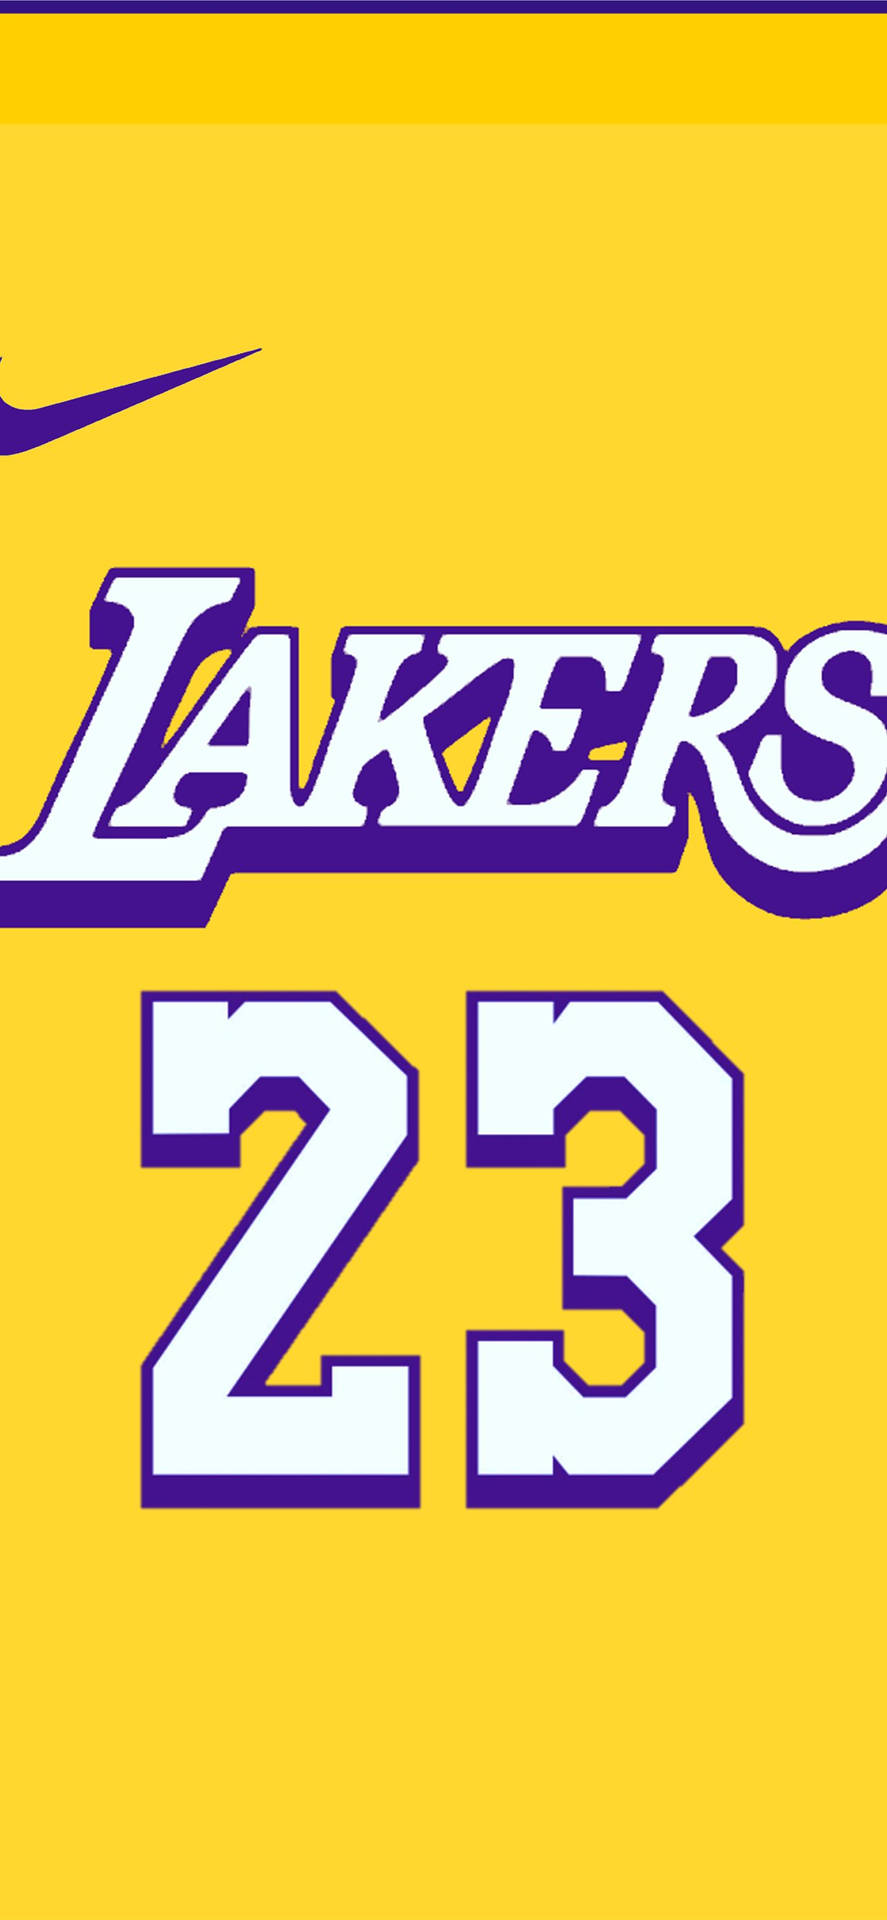 Lakers 23 logo på en gul baggrund Wallpaper